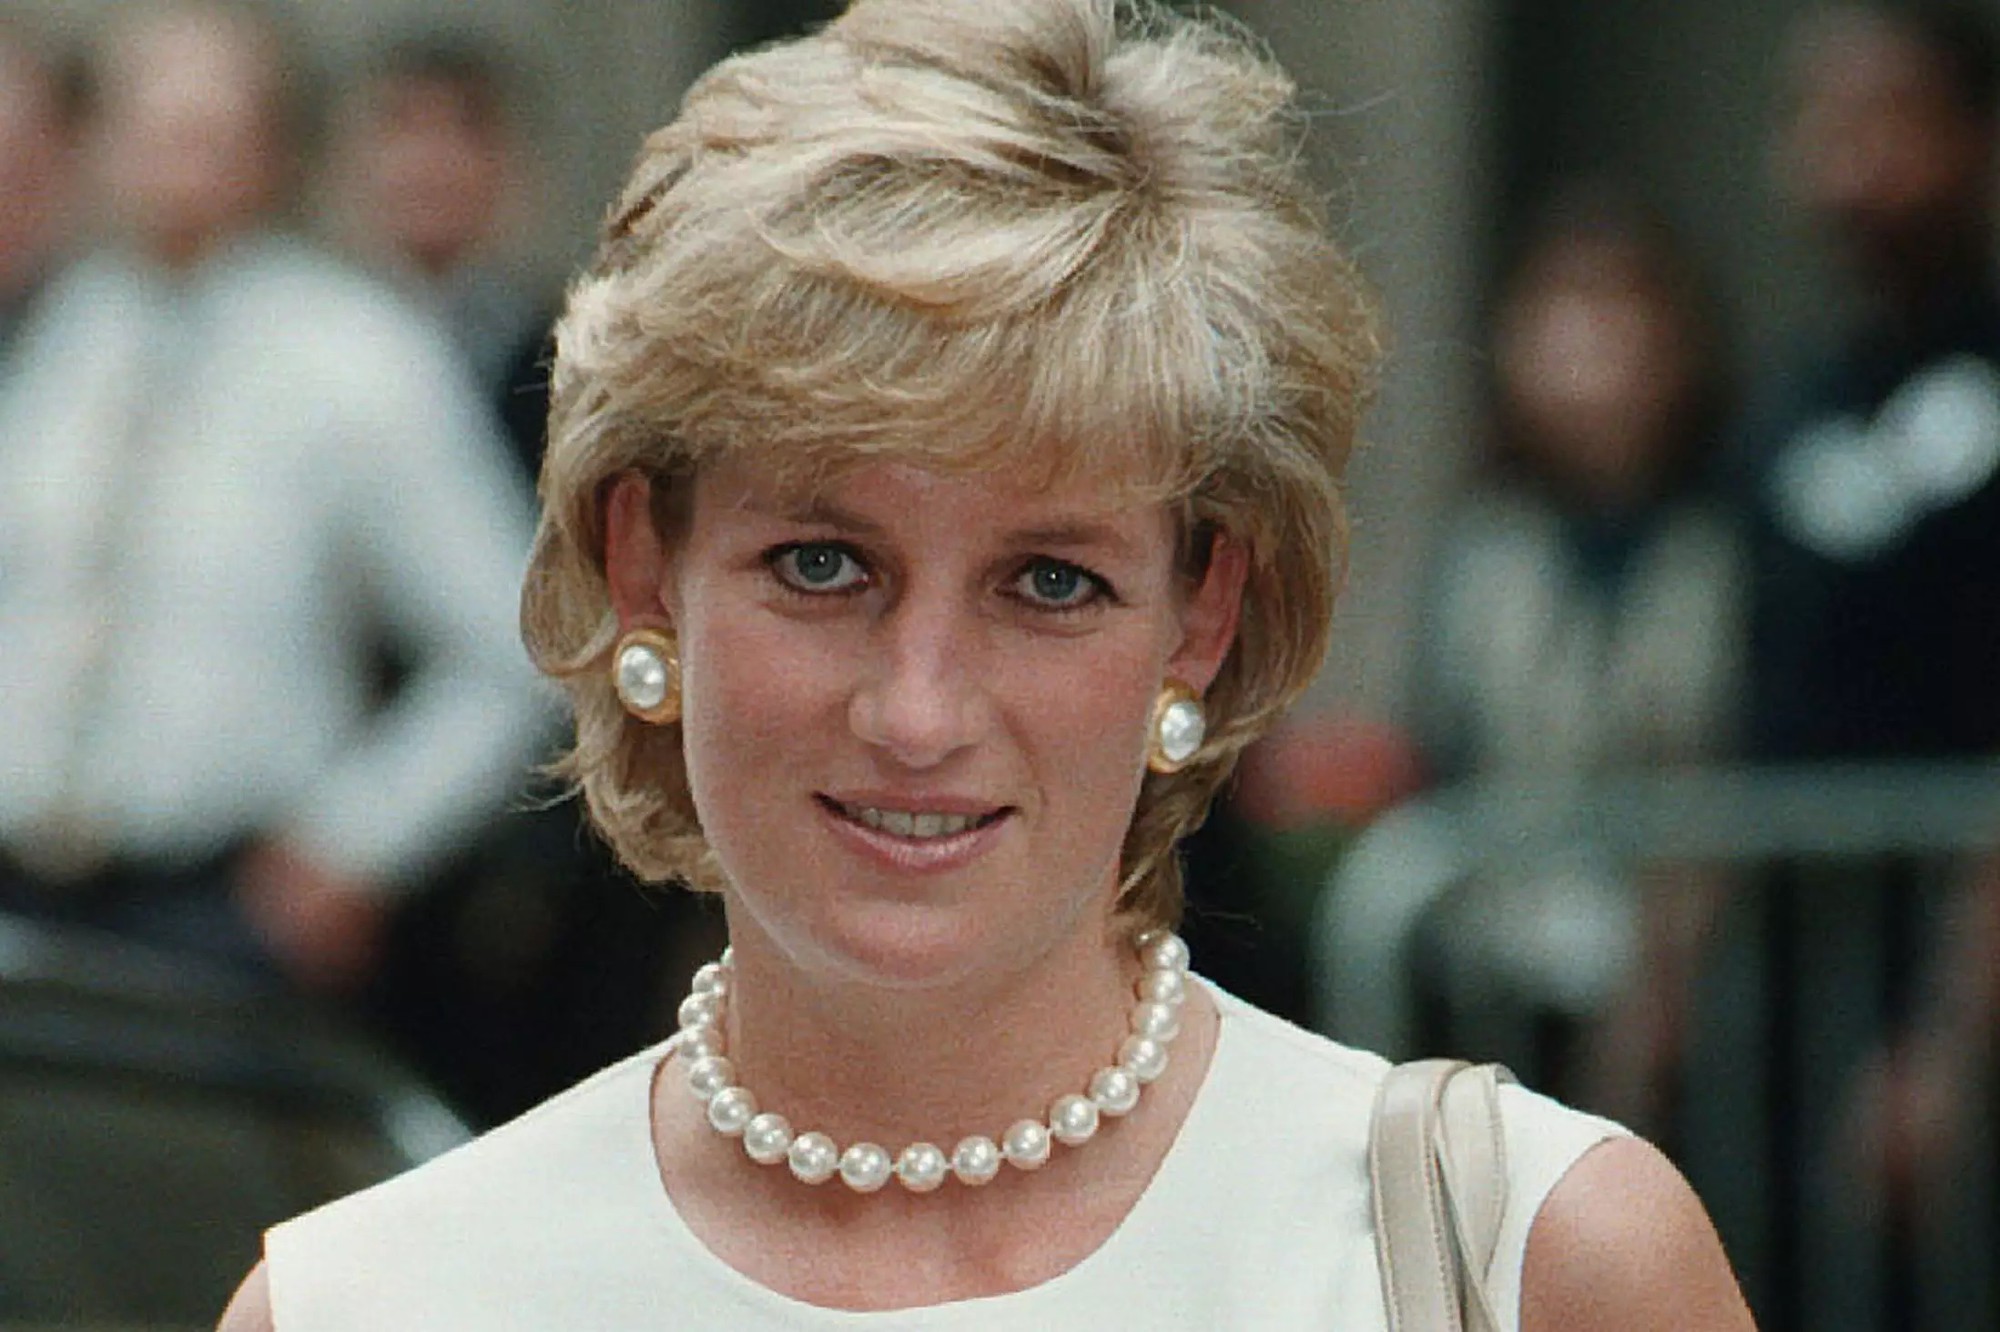 Bí mật đằng sau mái tóc ngắn hoàn hảo của của Công nương Diana sẽ khiến bạn càng ngưỡng mộ sự kín đáo của bà - Ảnh 6.